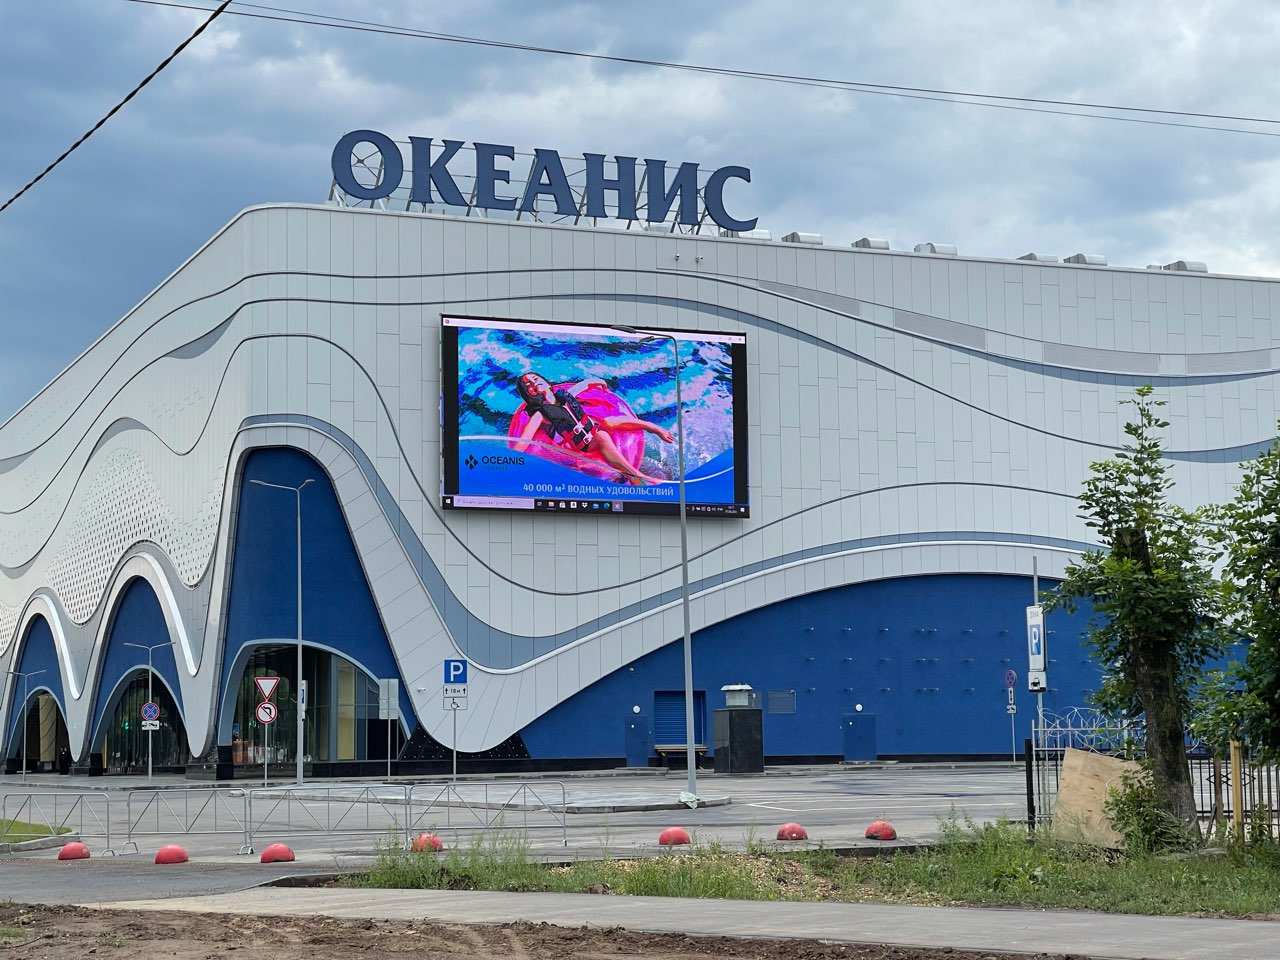 Нижегородский аквапарк «Океанис» получит налоговые льготы в 408 млн рублей - фото 1